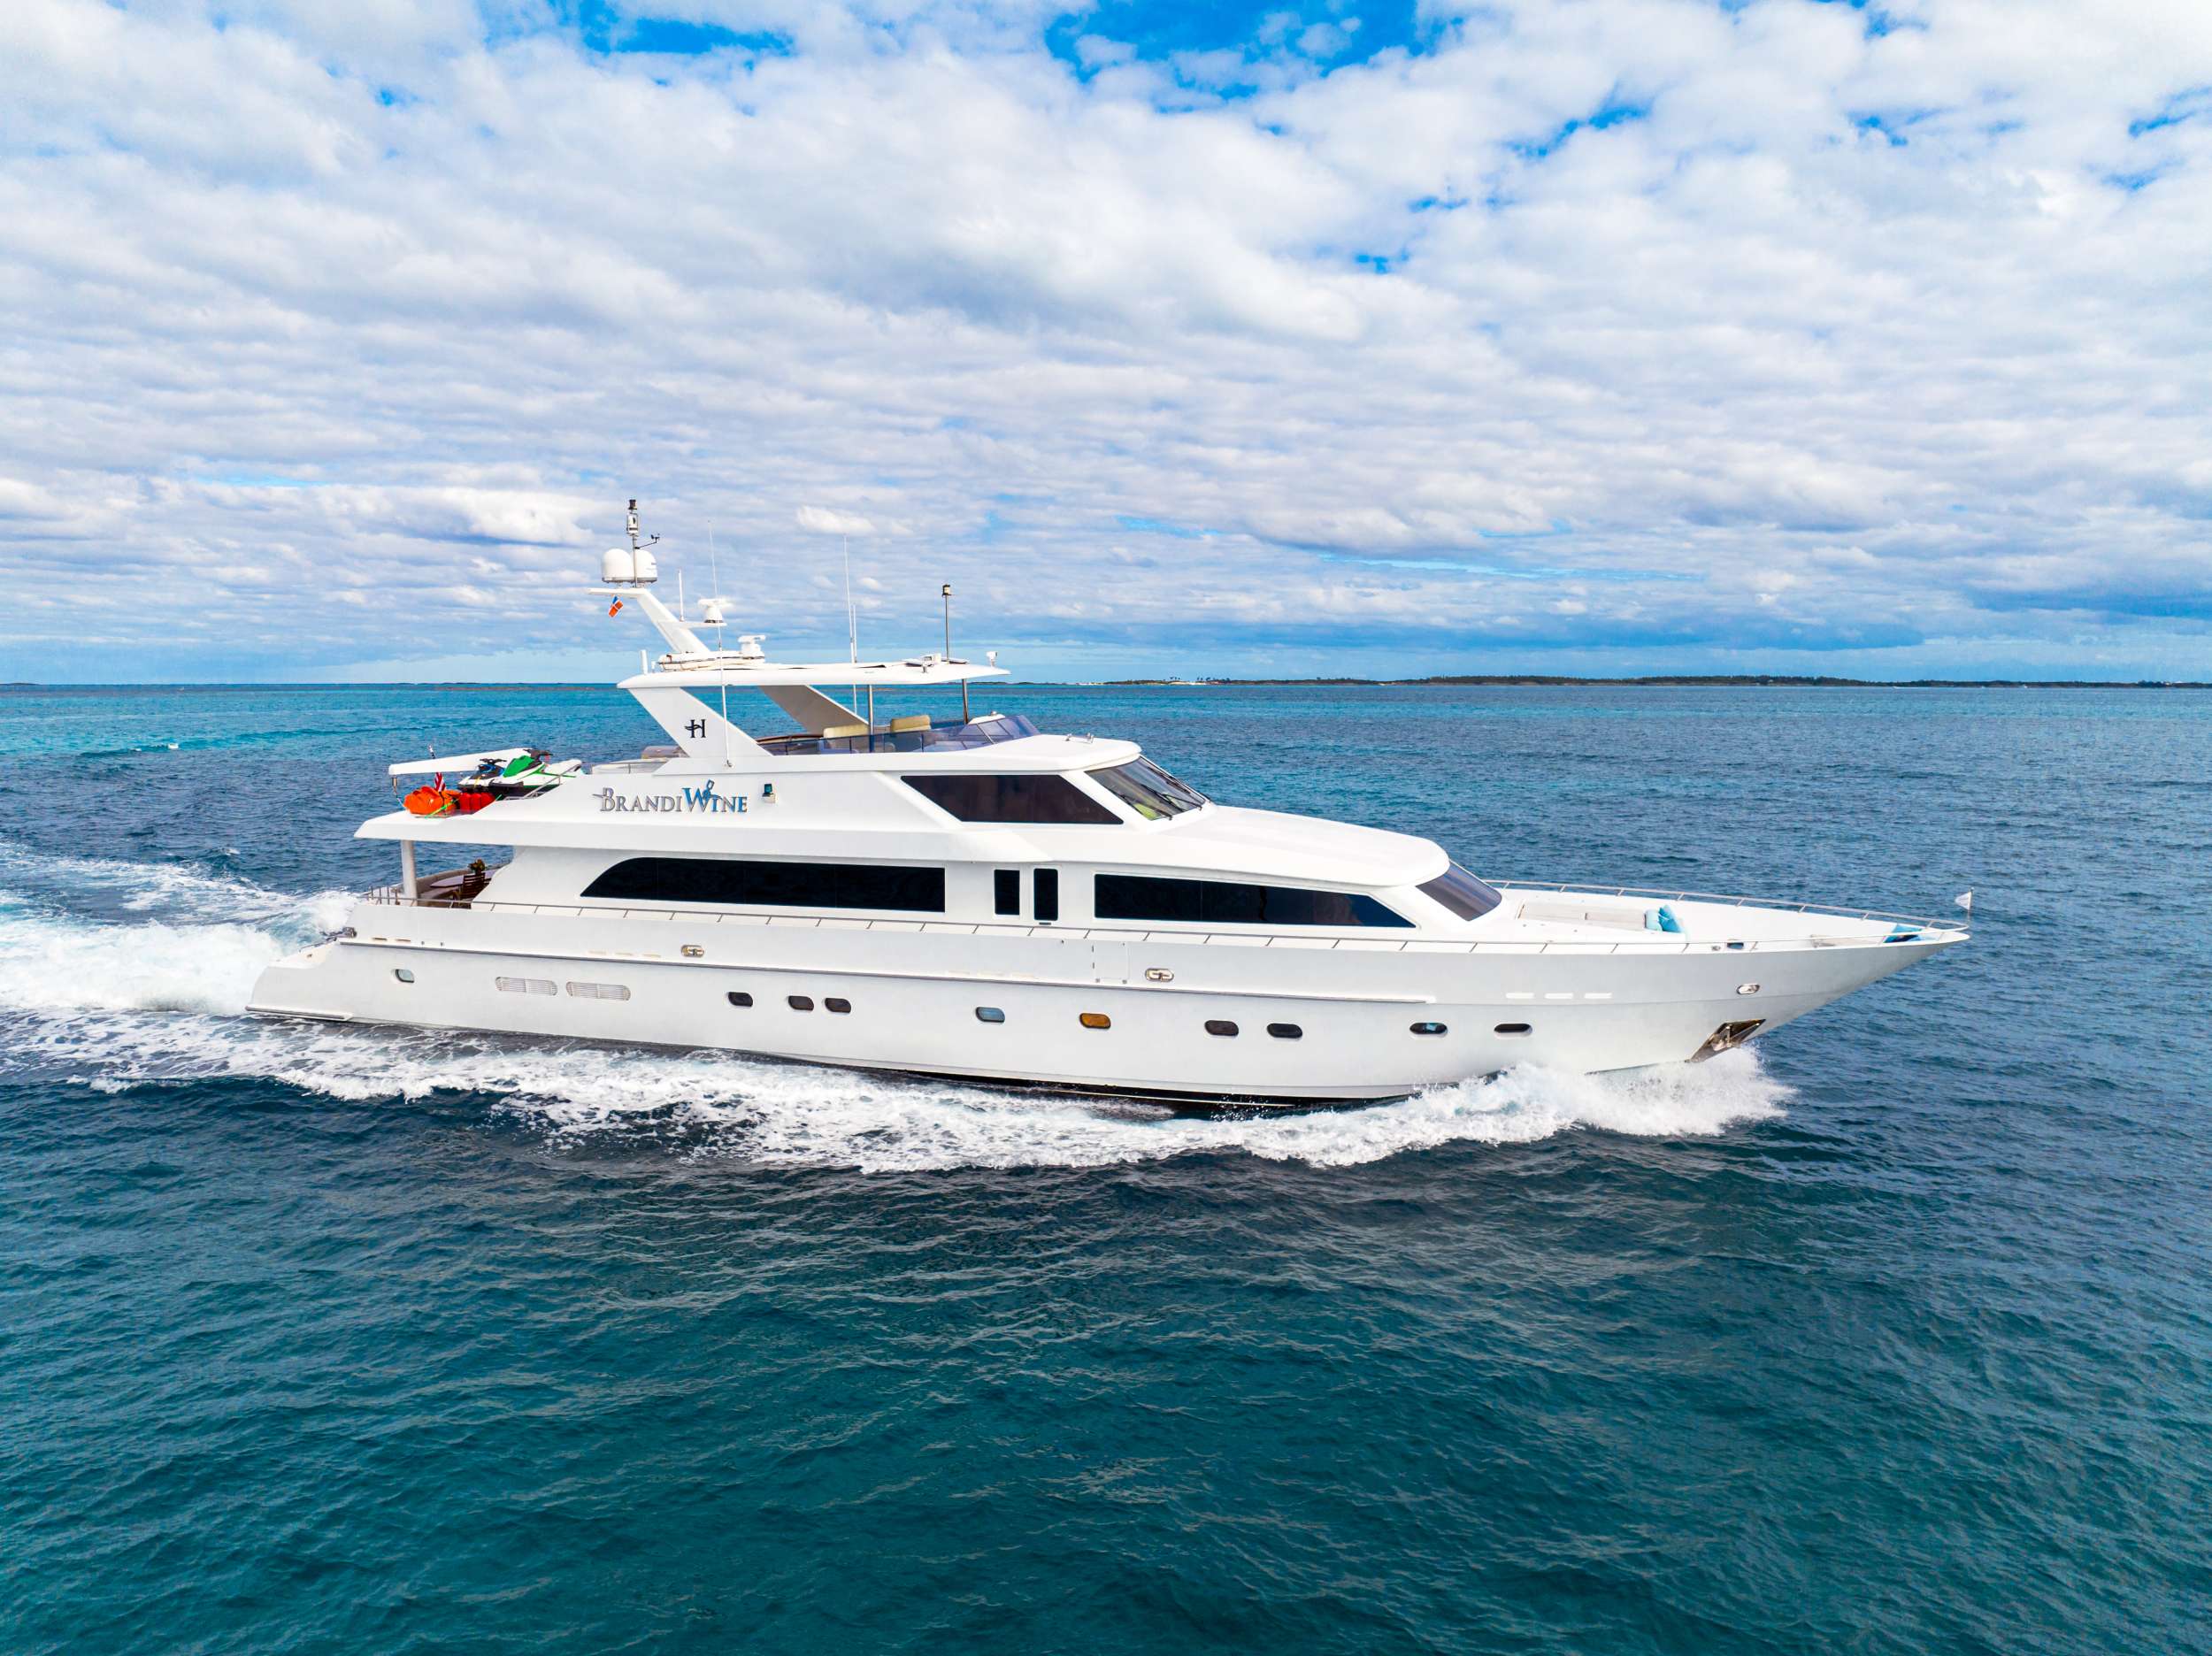 Brandi Wine Luxury Hargrave 114 Yacht Charter Cruising the Bahamas